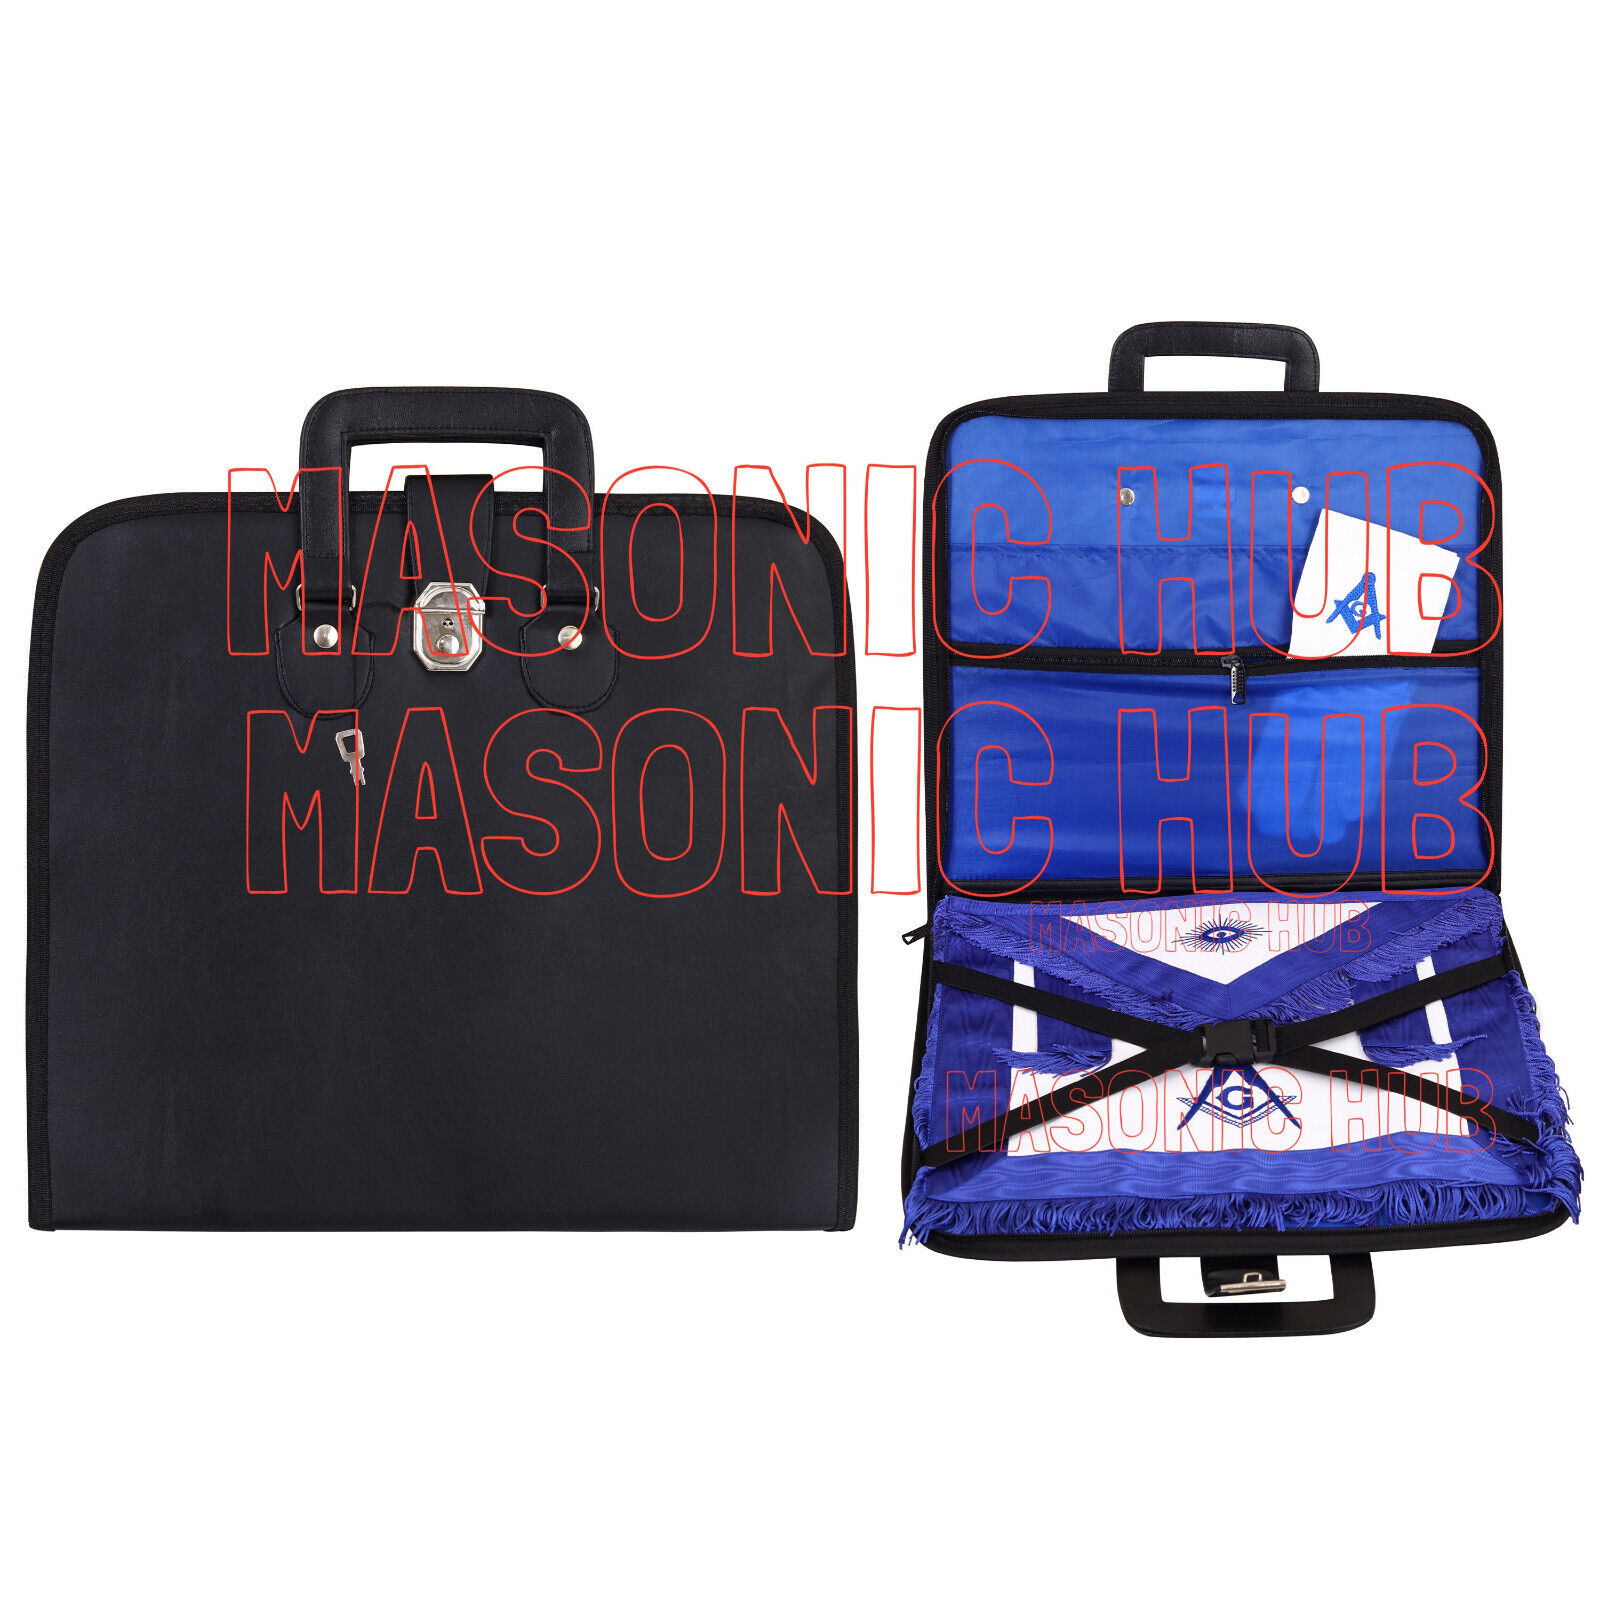 Masonic Regalia Black Faux Leather Masonic Apron Soft Case with Handle [BLACK]